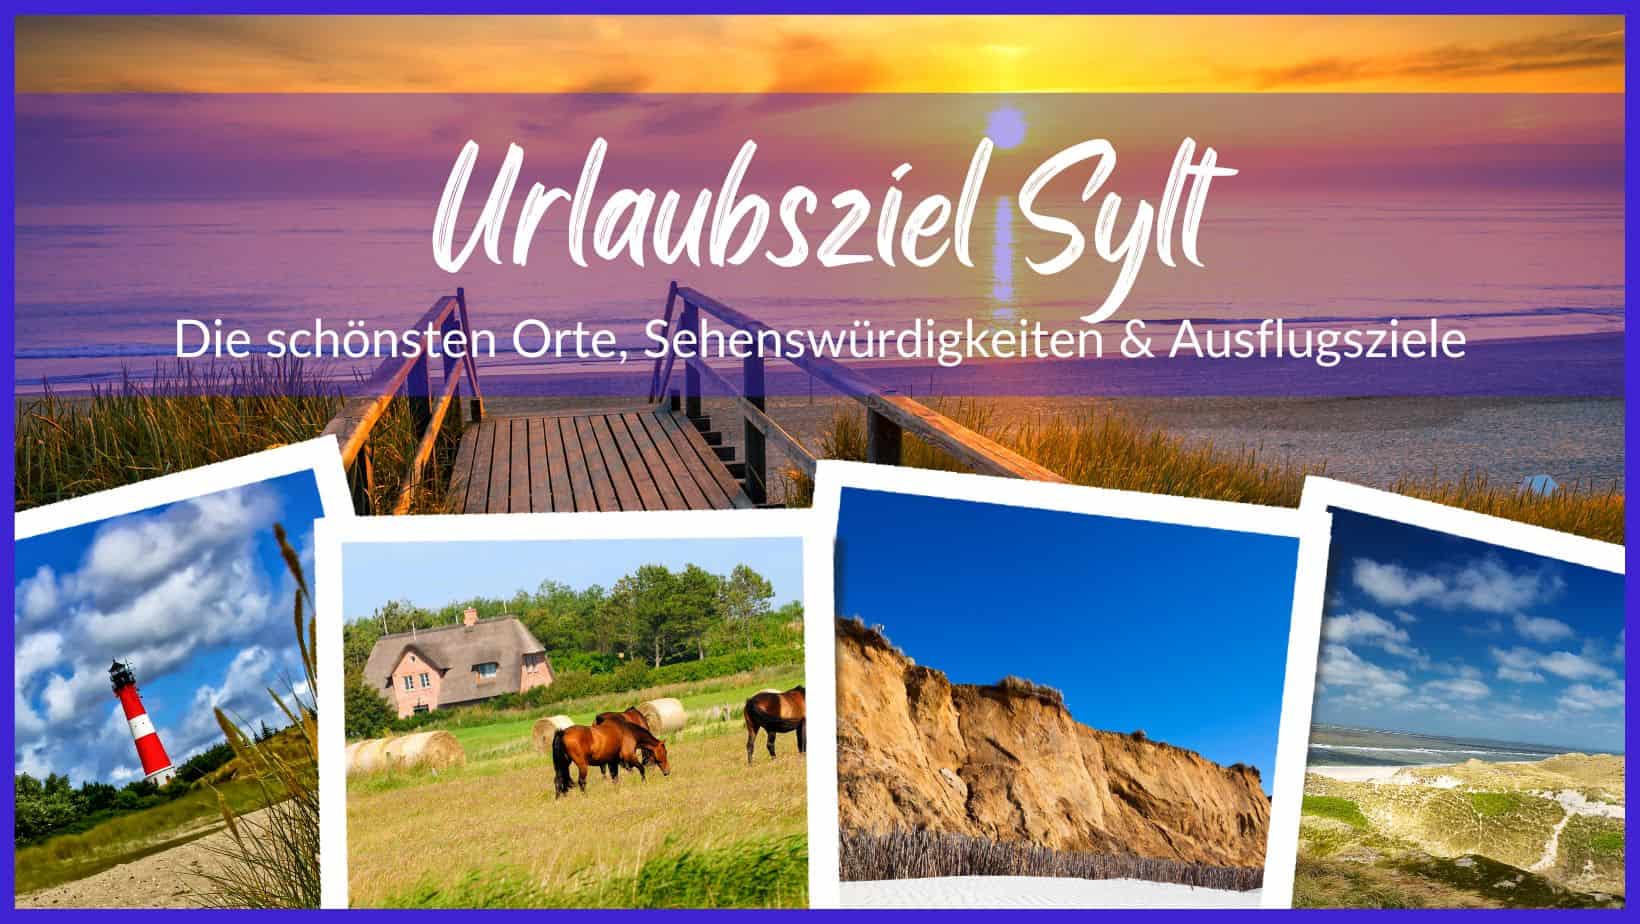 Die schönsten Orte, Sehenswürdigkeiten & Ausflugsziele auf Sylt